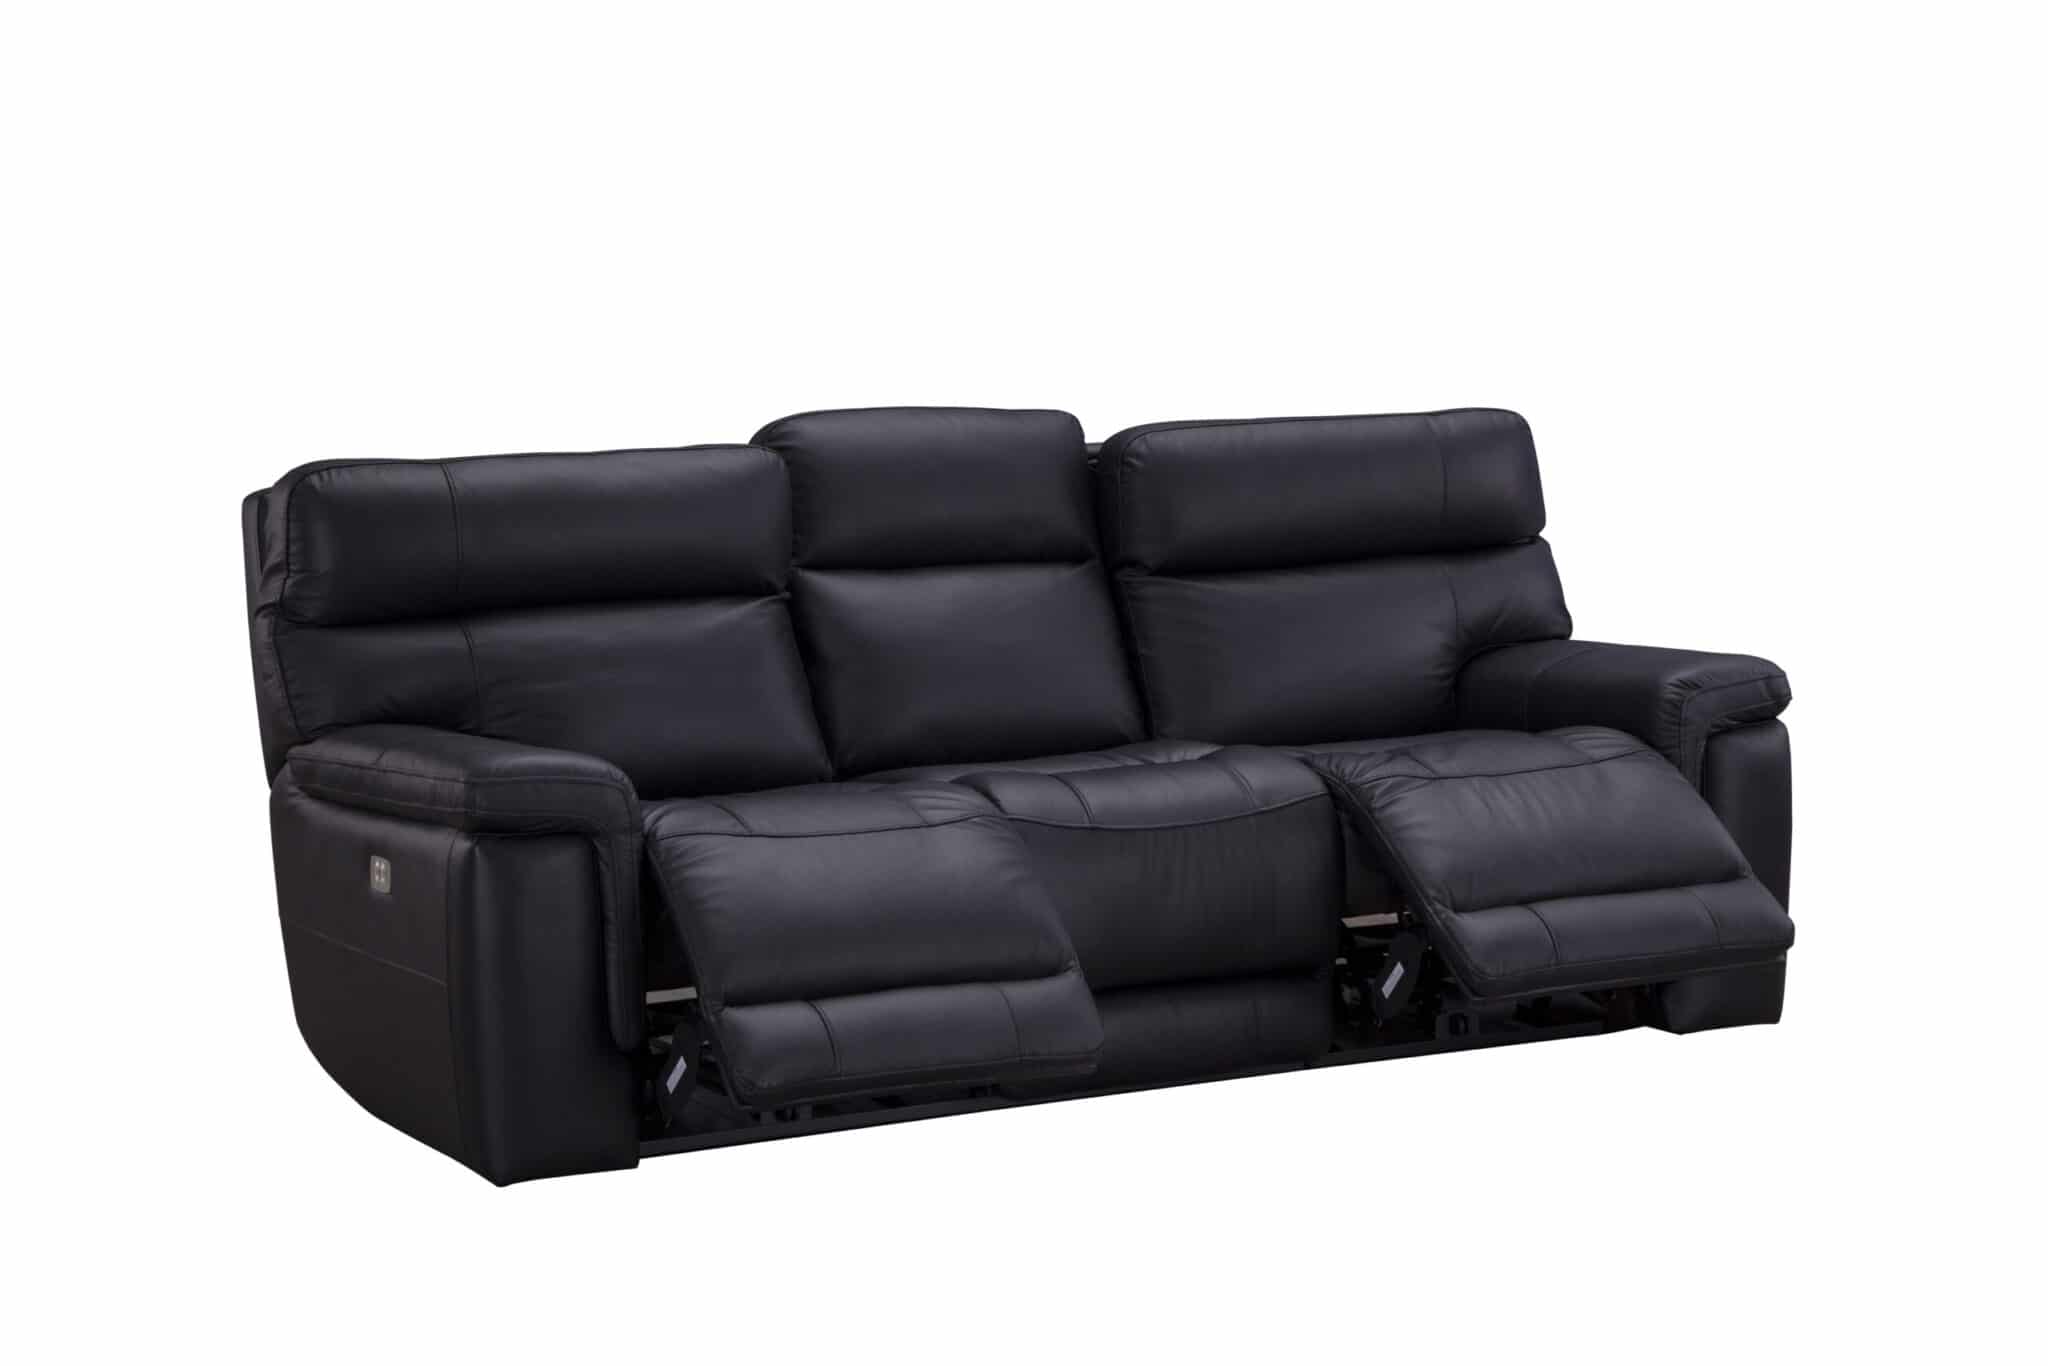 Harley Manual Recliner Sofa